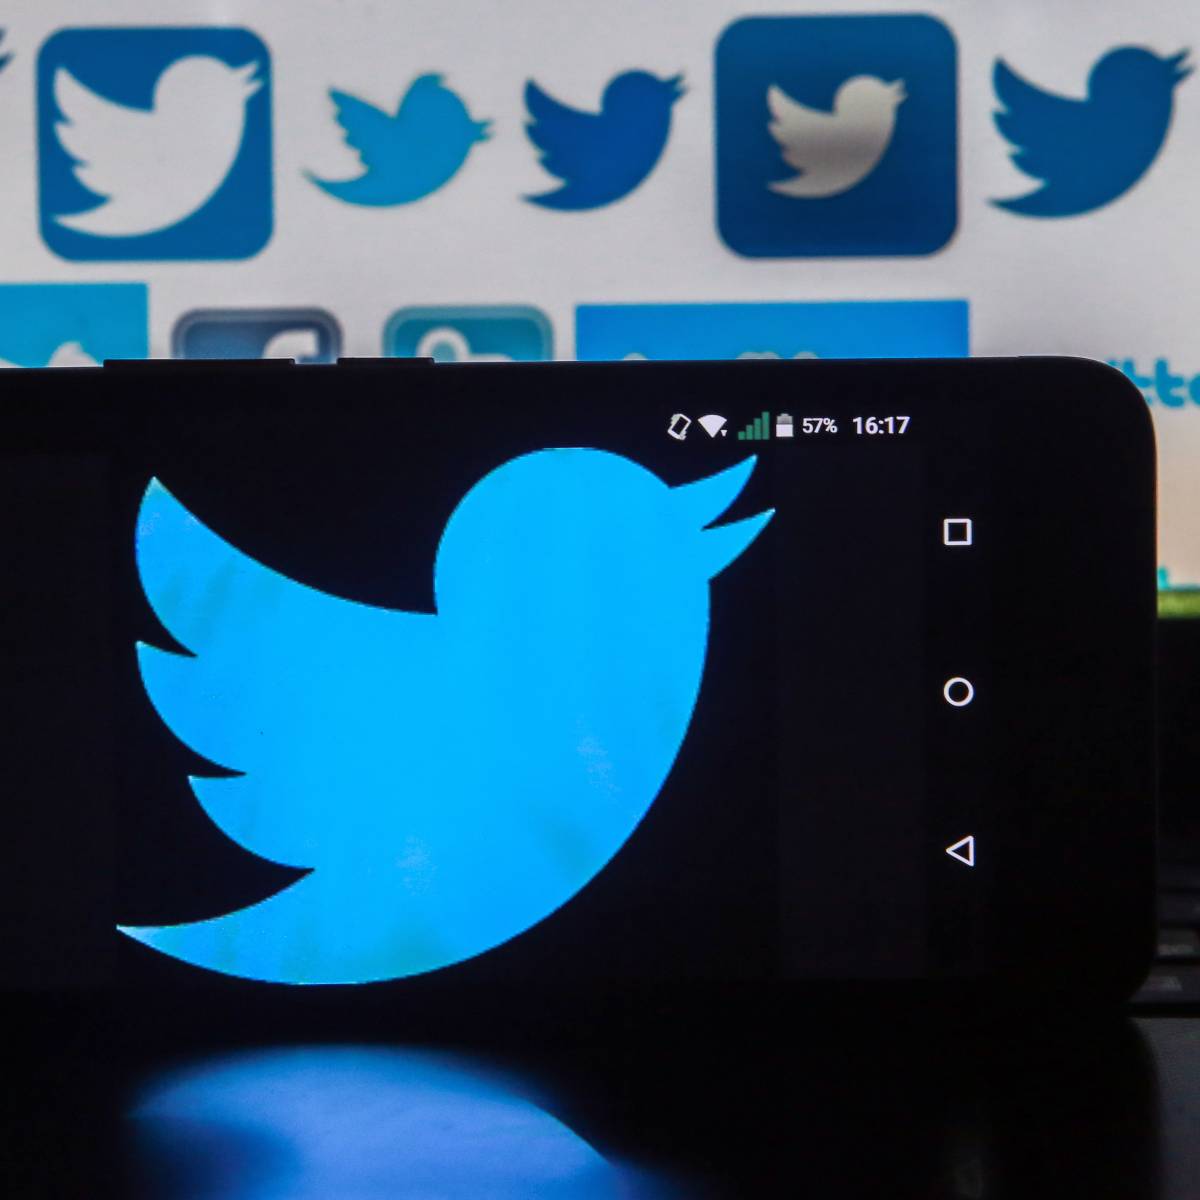 Twitter заблокировал аккаунт российской делегации на переговорах в Вене